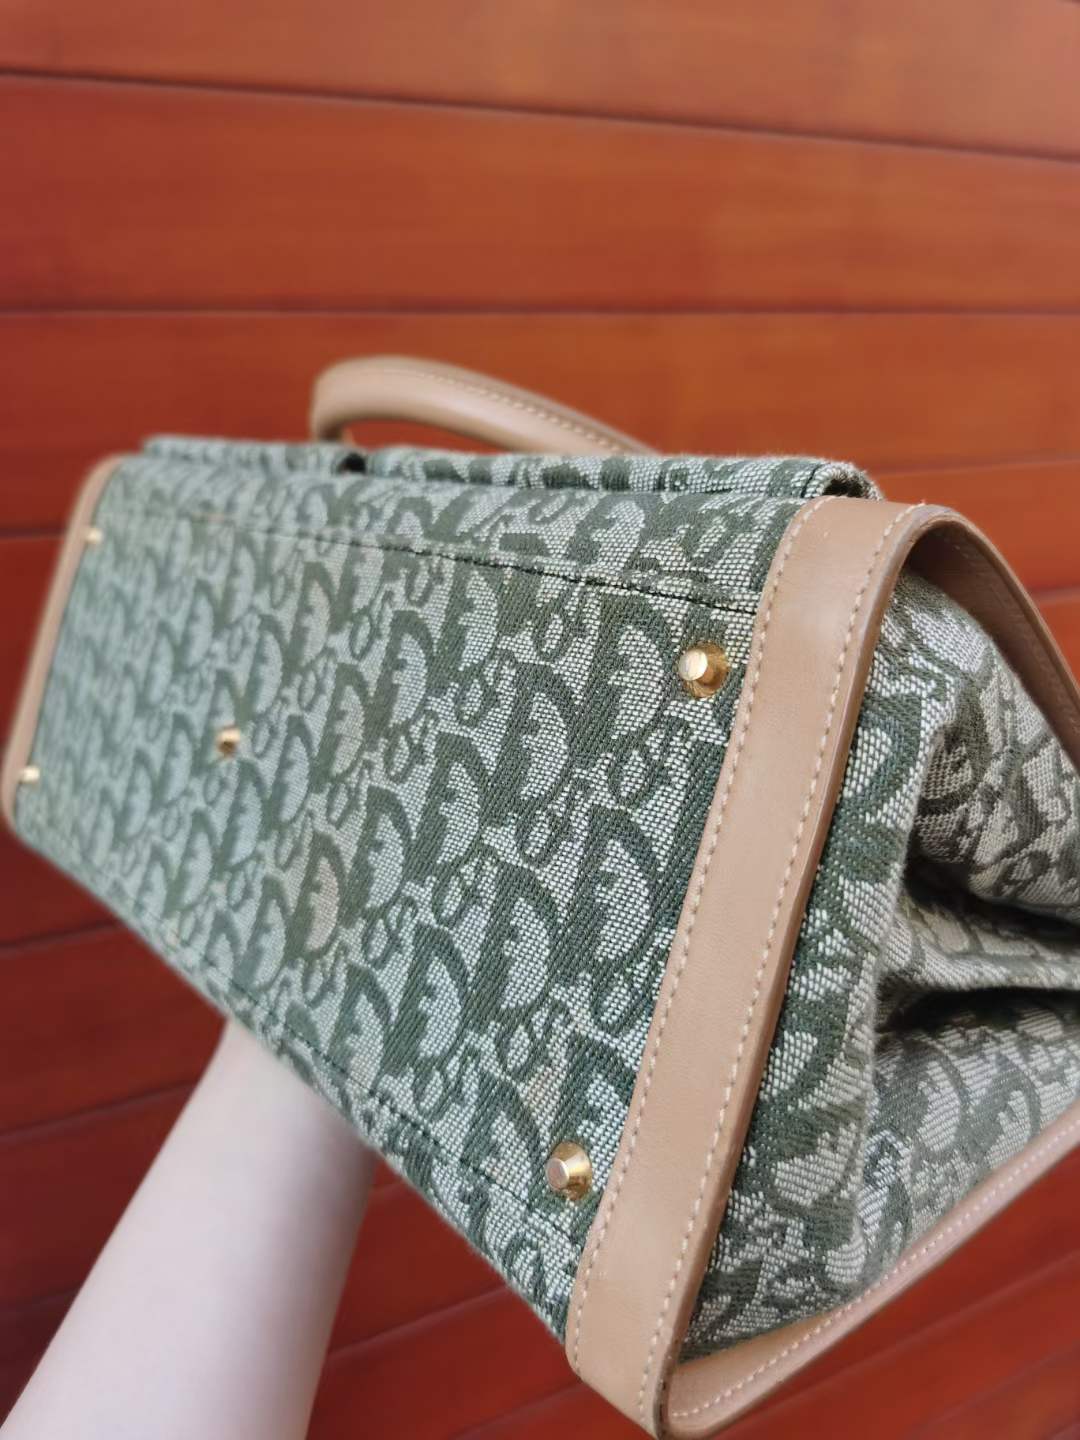 Pre-loved Christian Dior Vintage Trotter-pattern Handbag